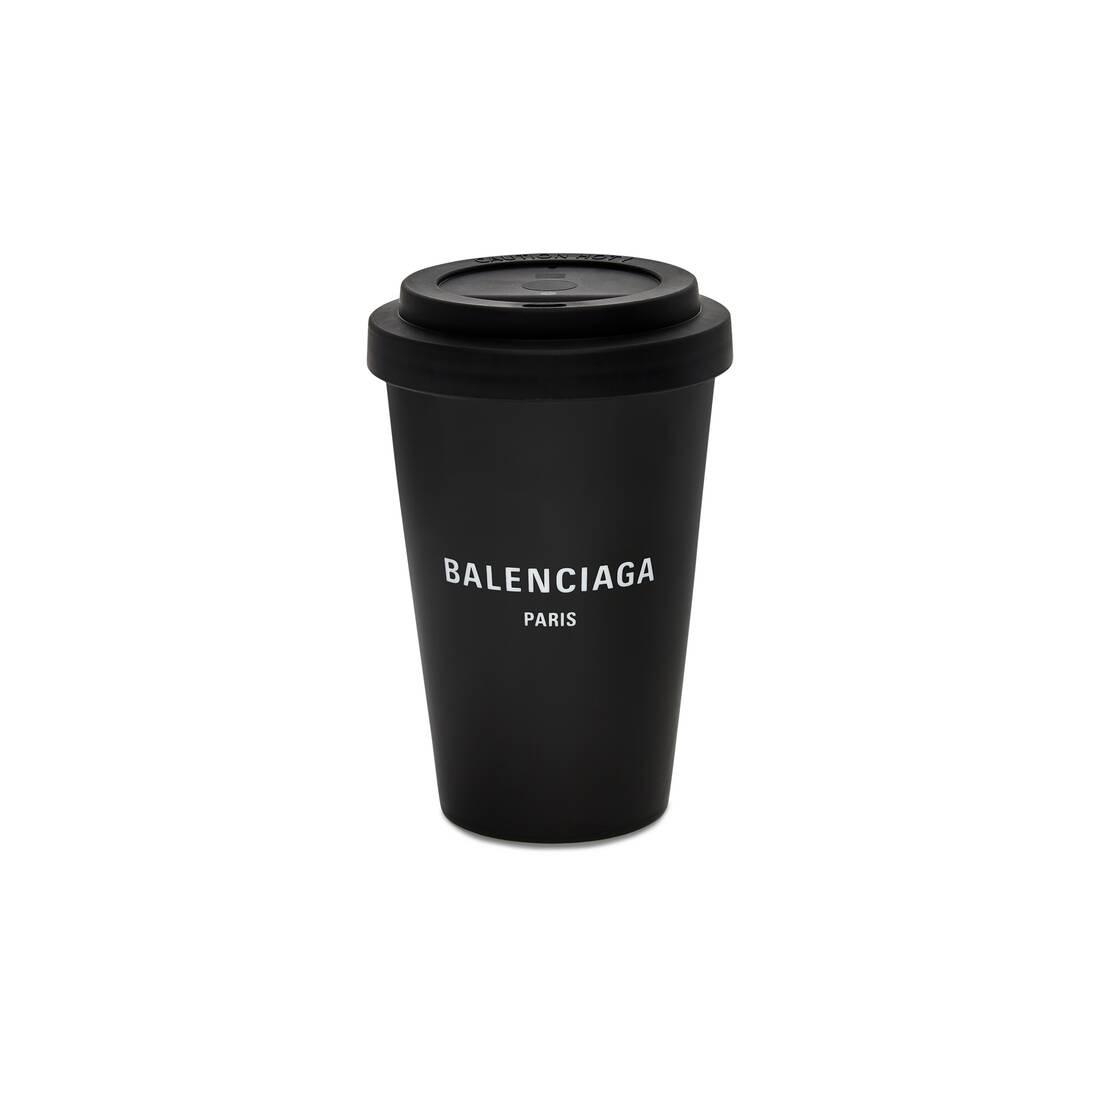 Paris Coffee Cup in Black - 1